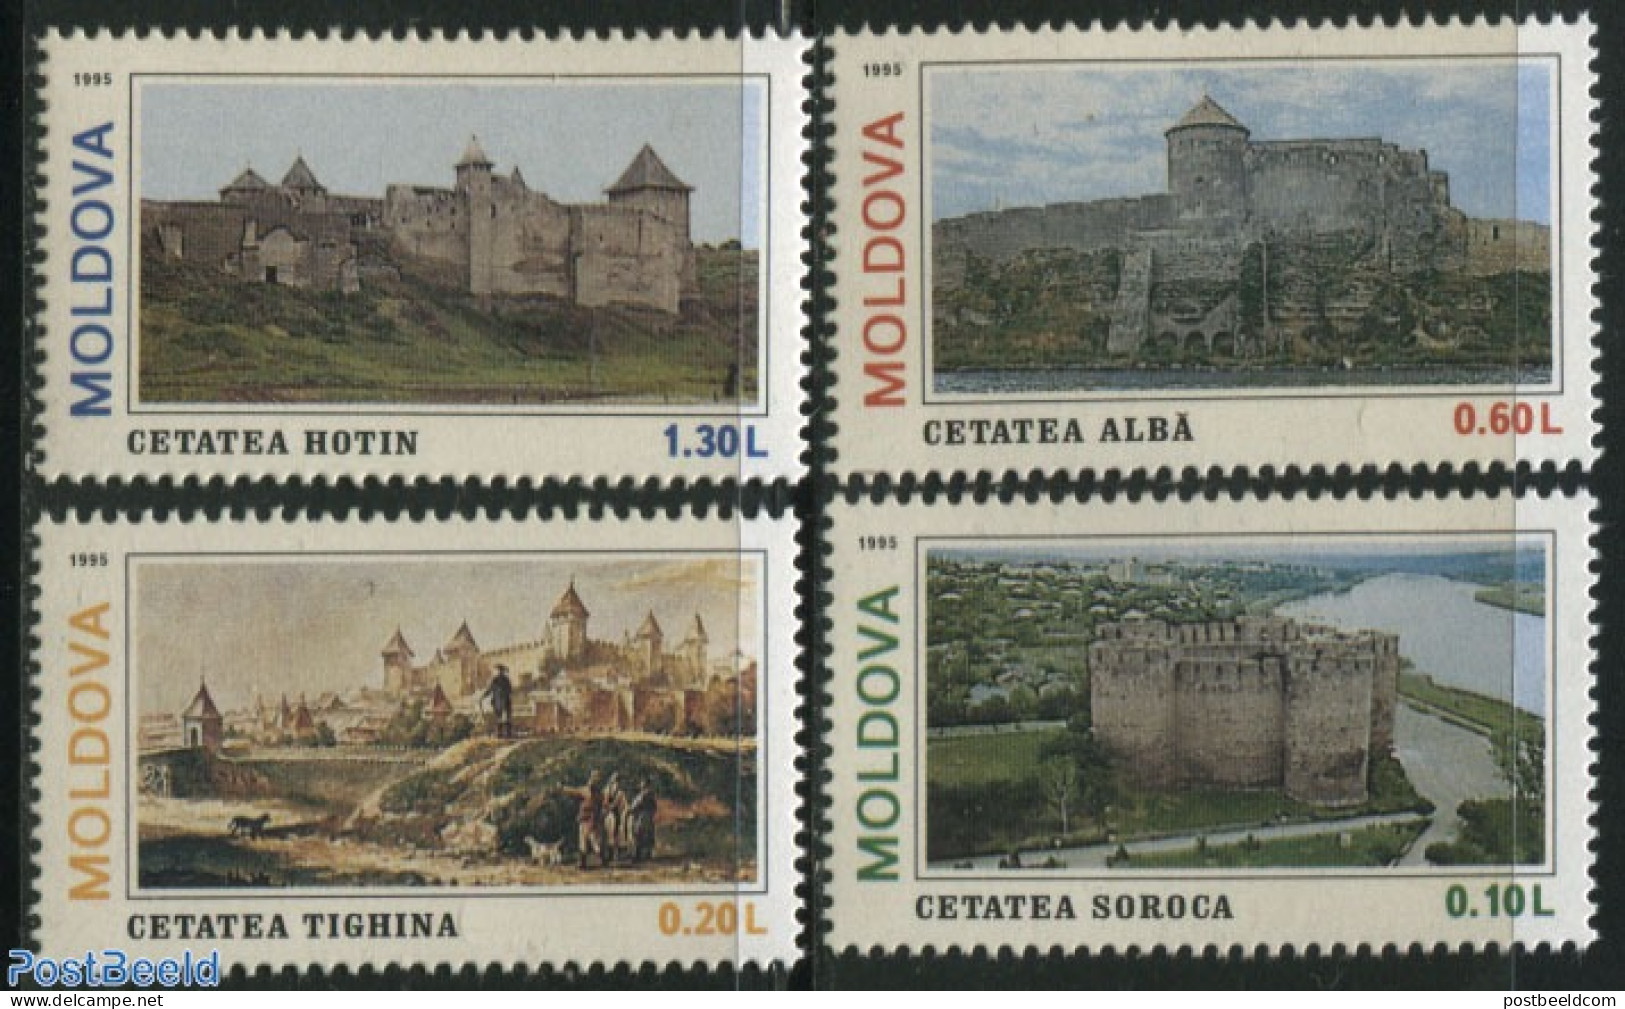 Moldova 1995 Castles 4v, Mint NH, Art - Castles & Fortifications - Castles